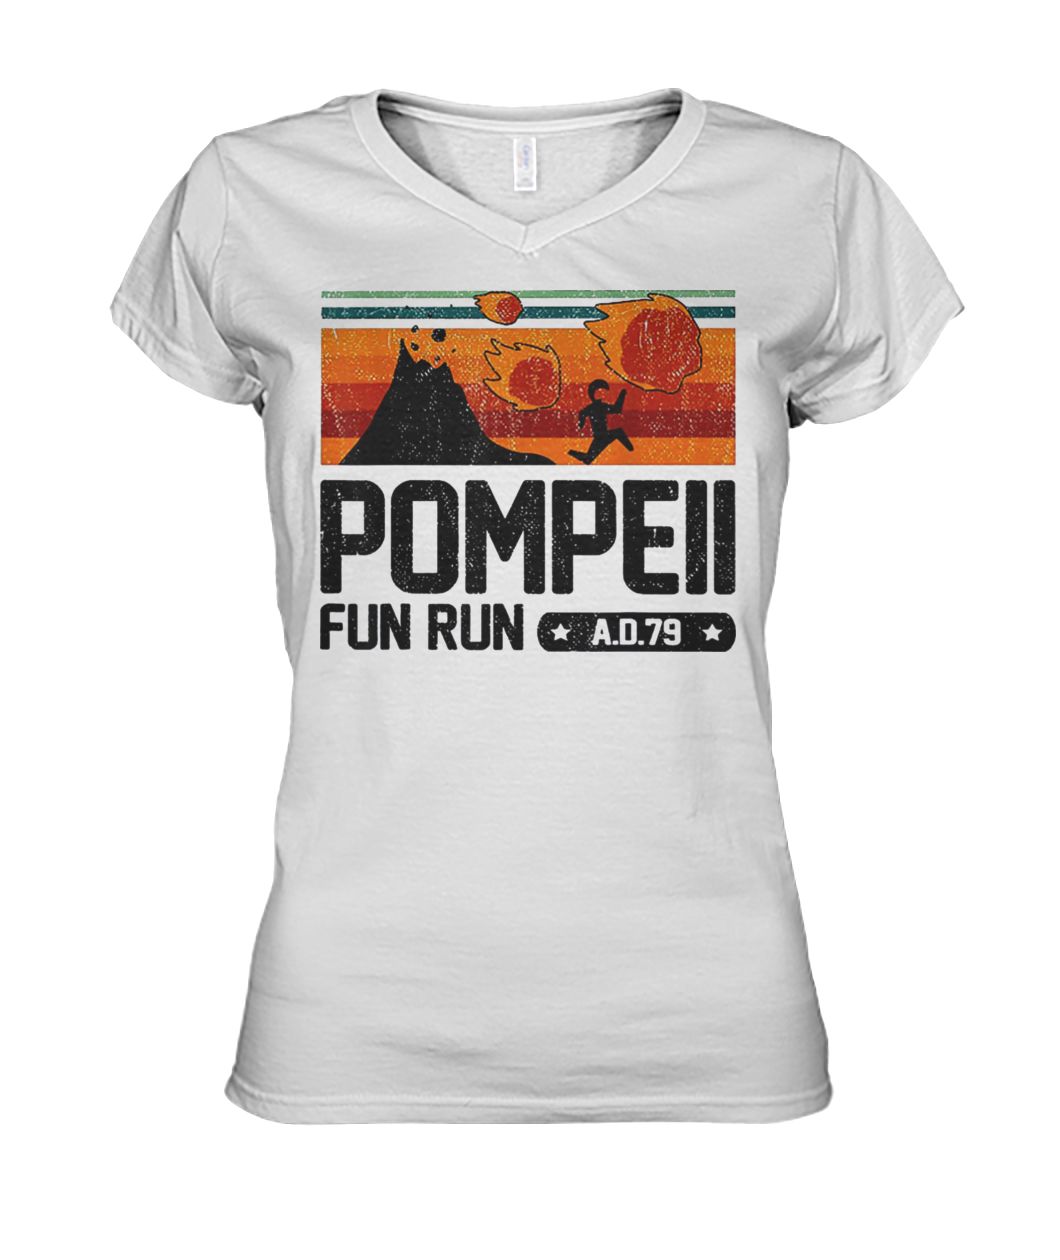 Vintage pompeii fun run AD 79 women's v-neck